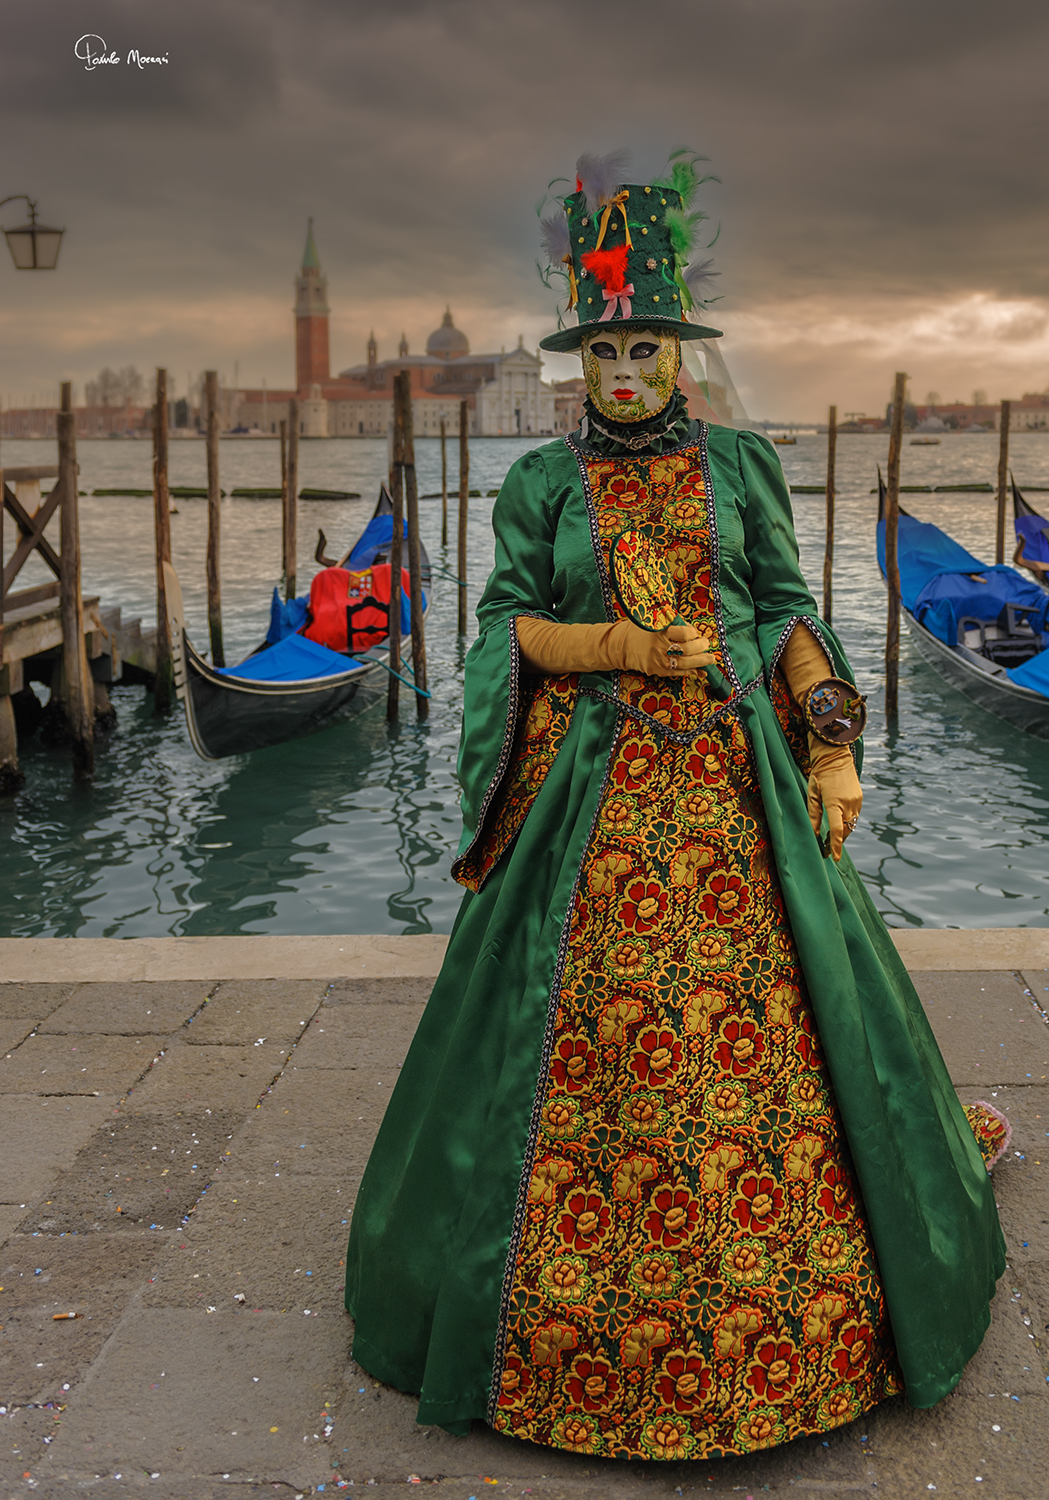 Venice in fancy dress .......